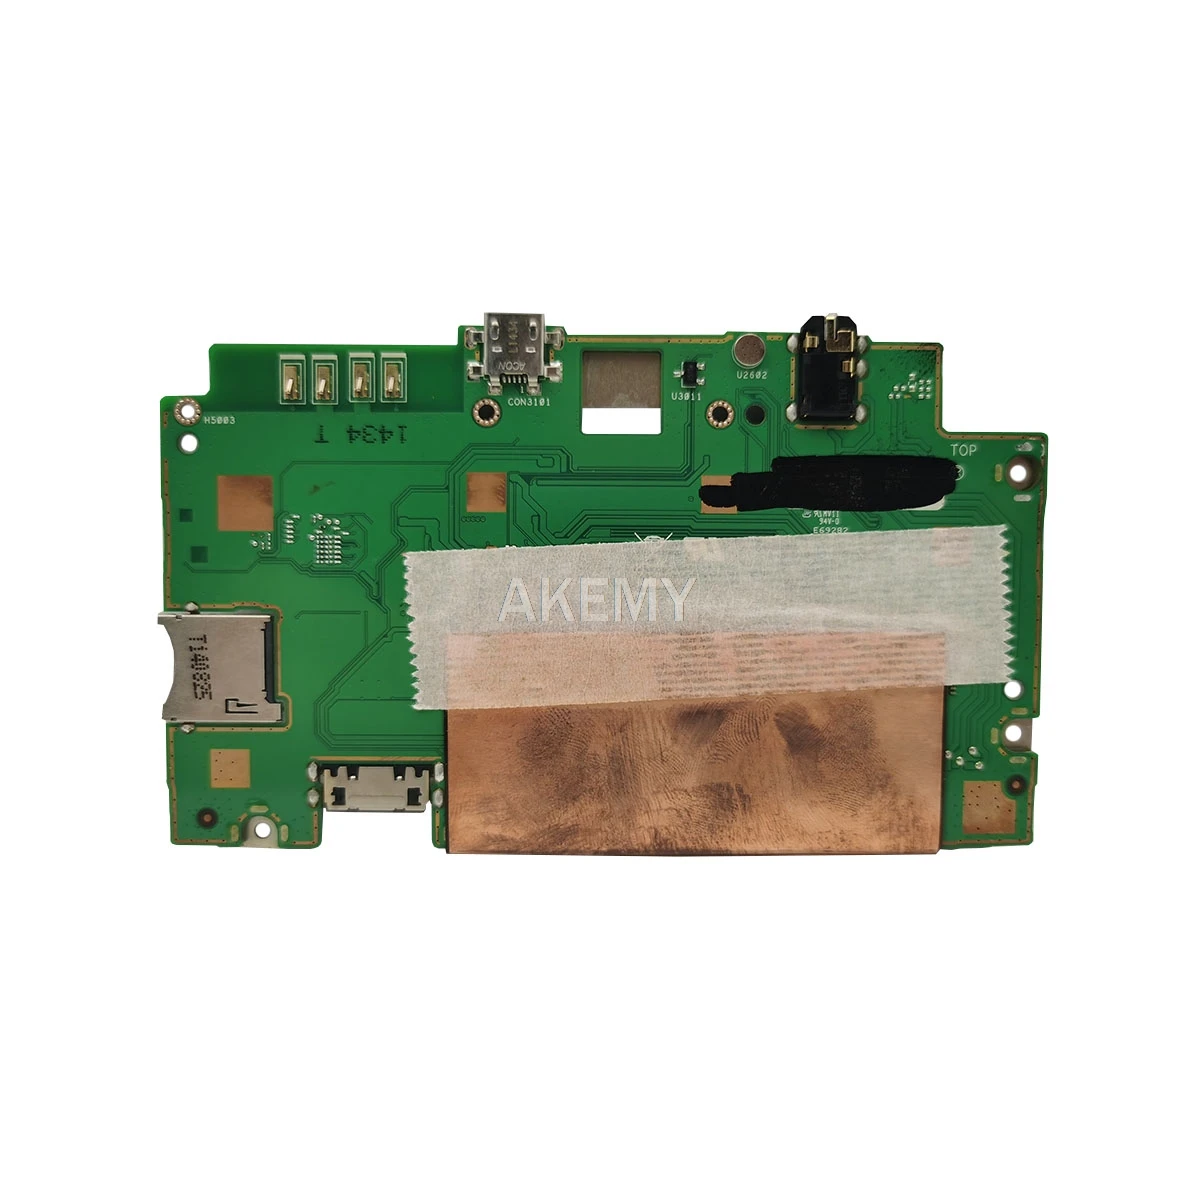 Uus! algne Asus ViVoTab 8 M81C Tabletid emaplaadi mianboard loogika juhatuse W 32G SSD Z3745 PROTSESSOR 1GB RAM